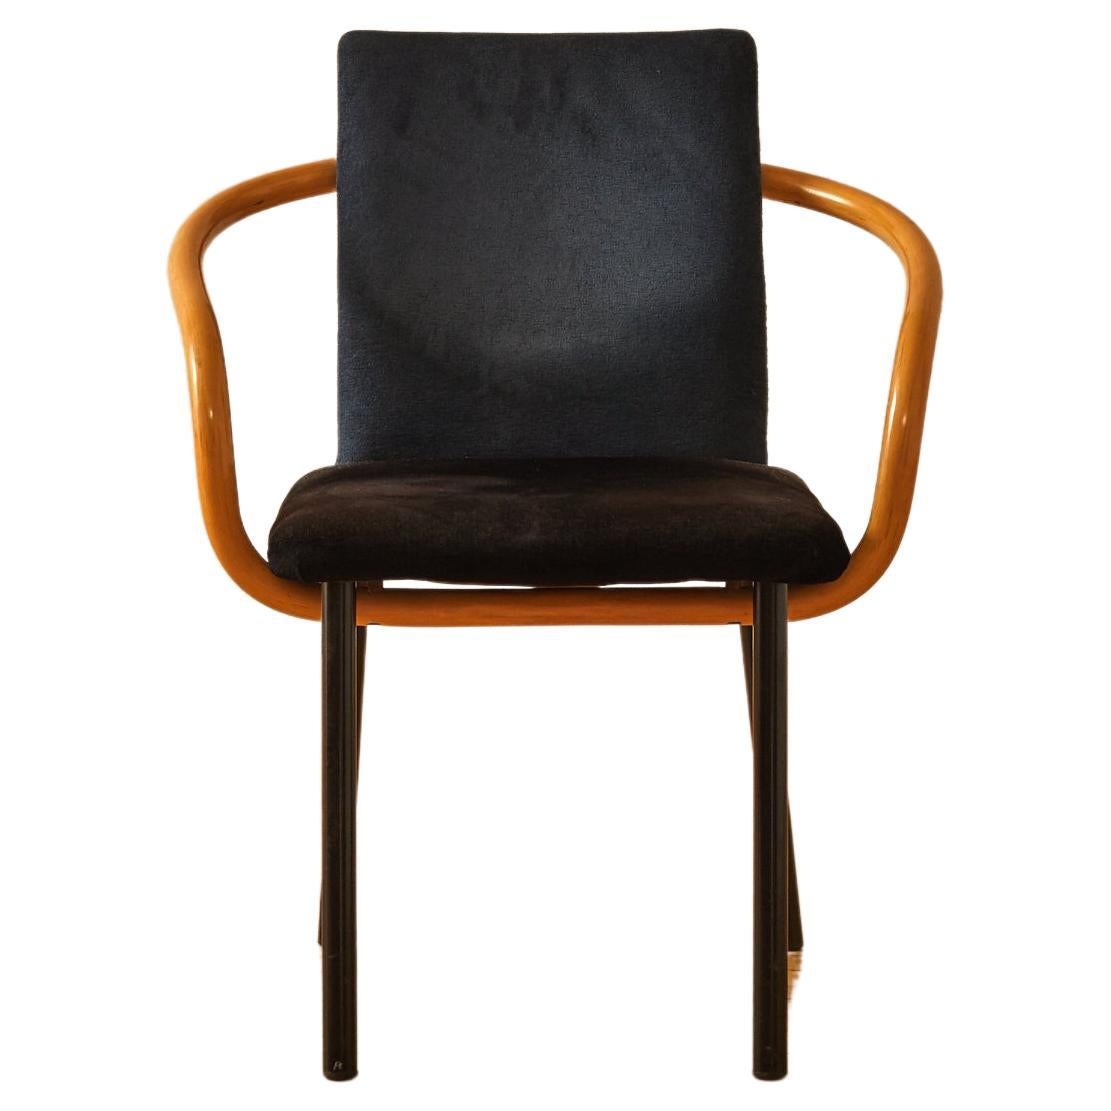 Ettore Sottsass "Mandarin" Chair